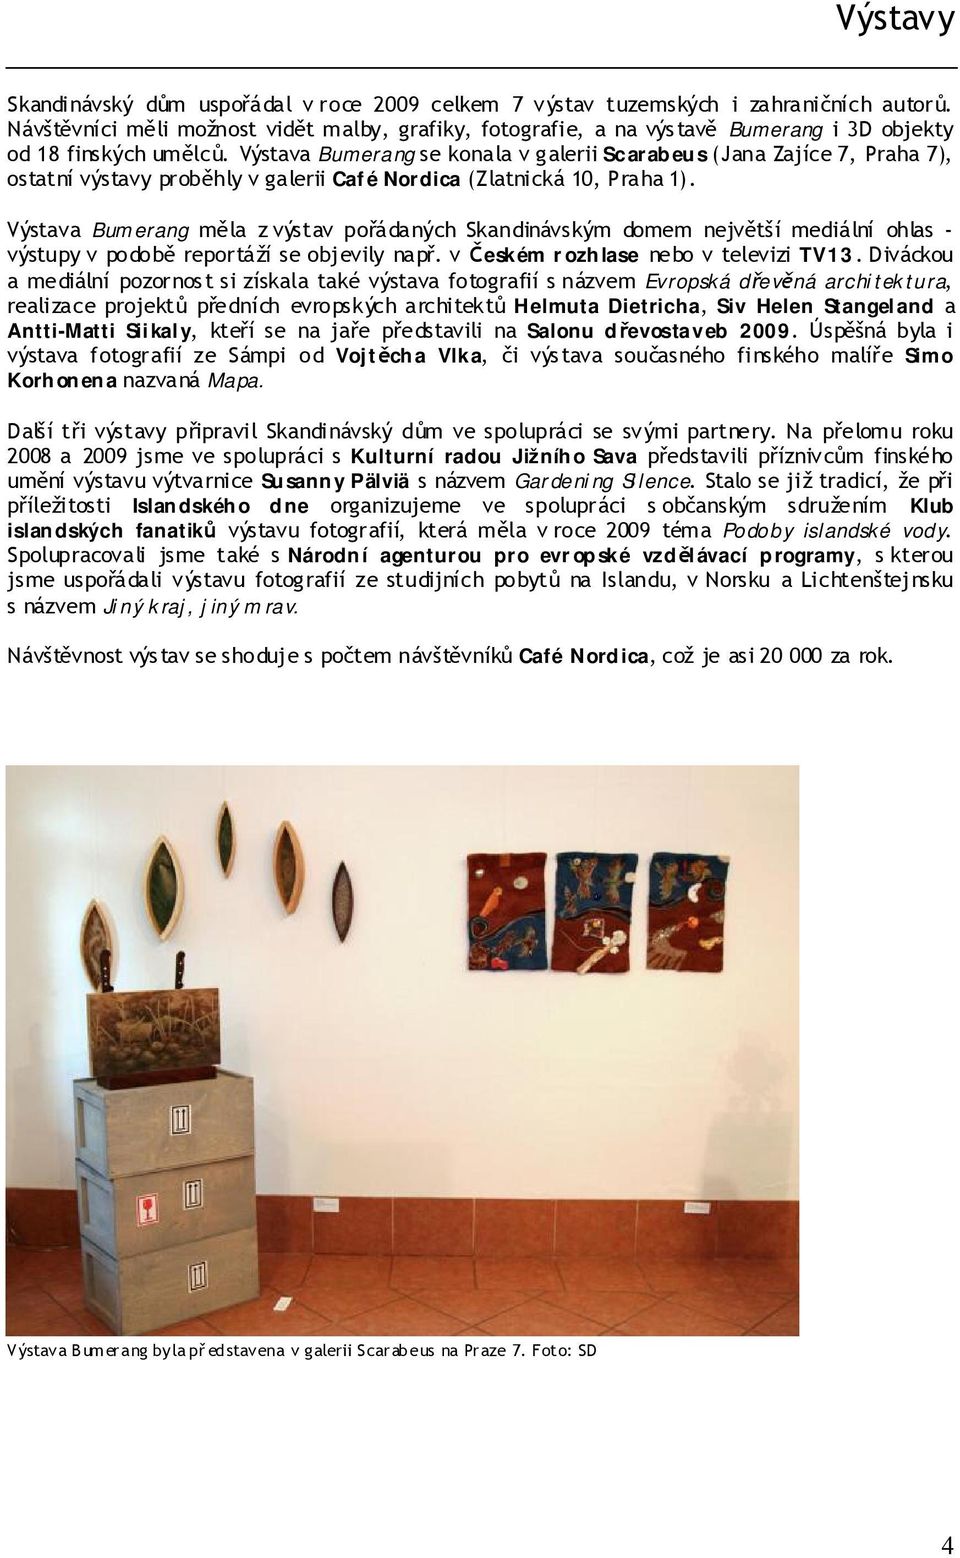 Výstava Bumerang se konala v galerii Scarabeus (Jana Zajíce 7, Praha 7), ostatní výstavy proběhly v galerii Café Nordica (Zlatnická 10, Praha 1).